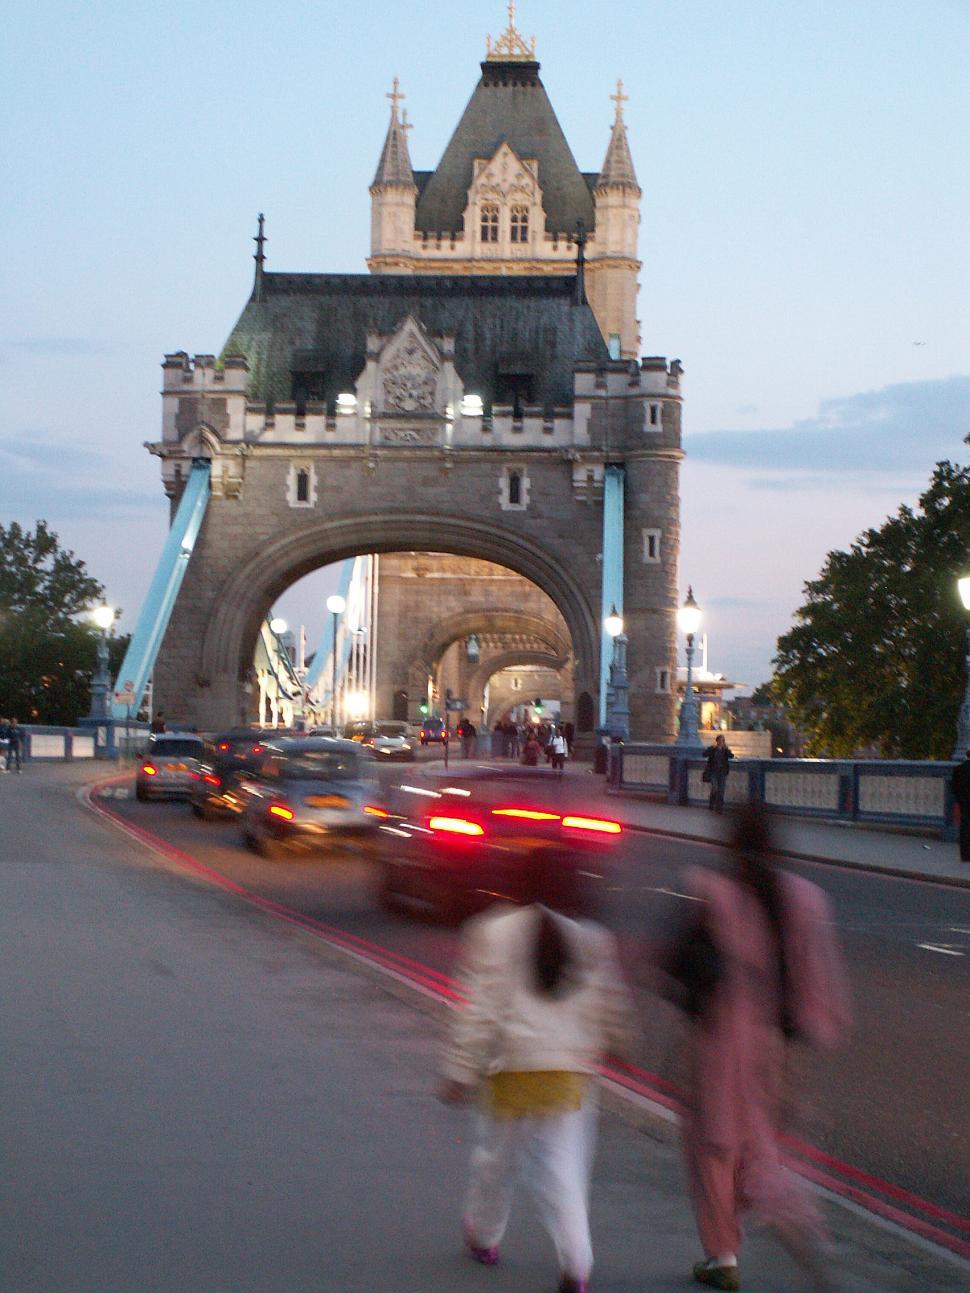 Free Image of Tower Bridge 